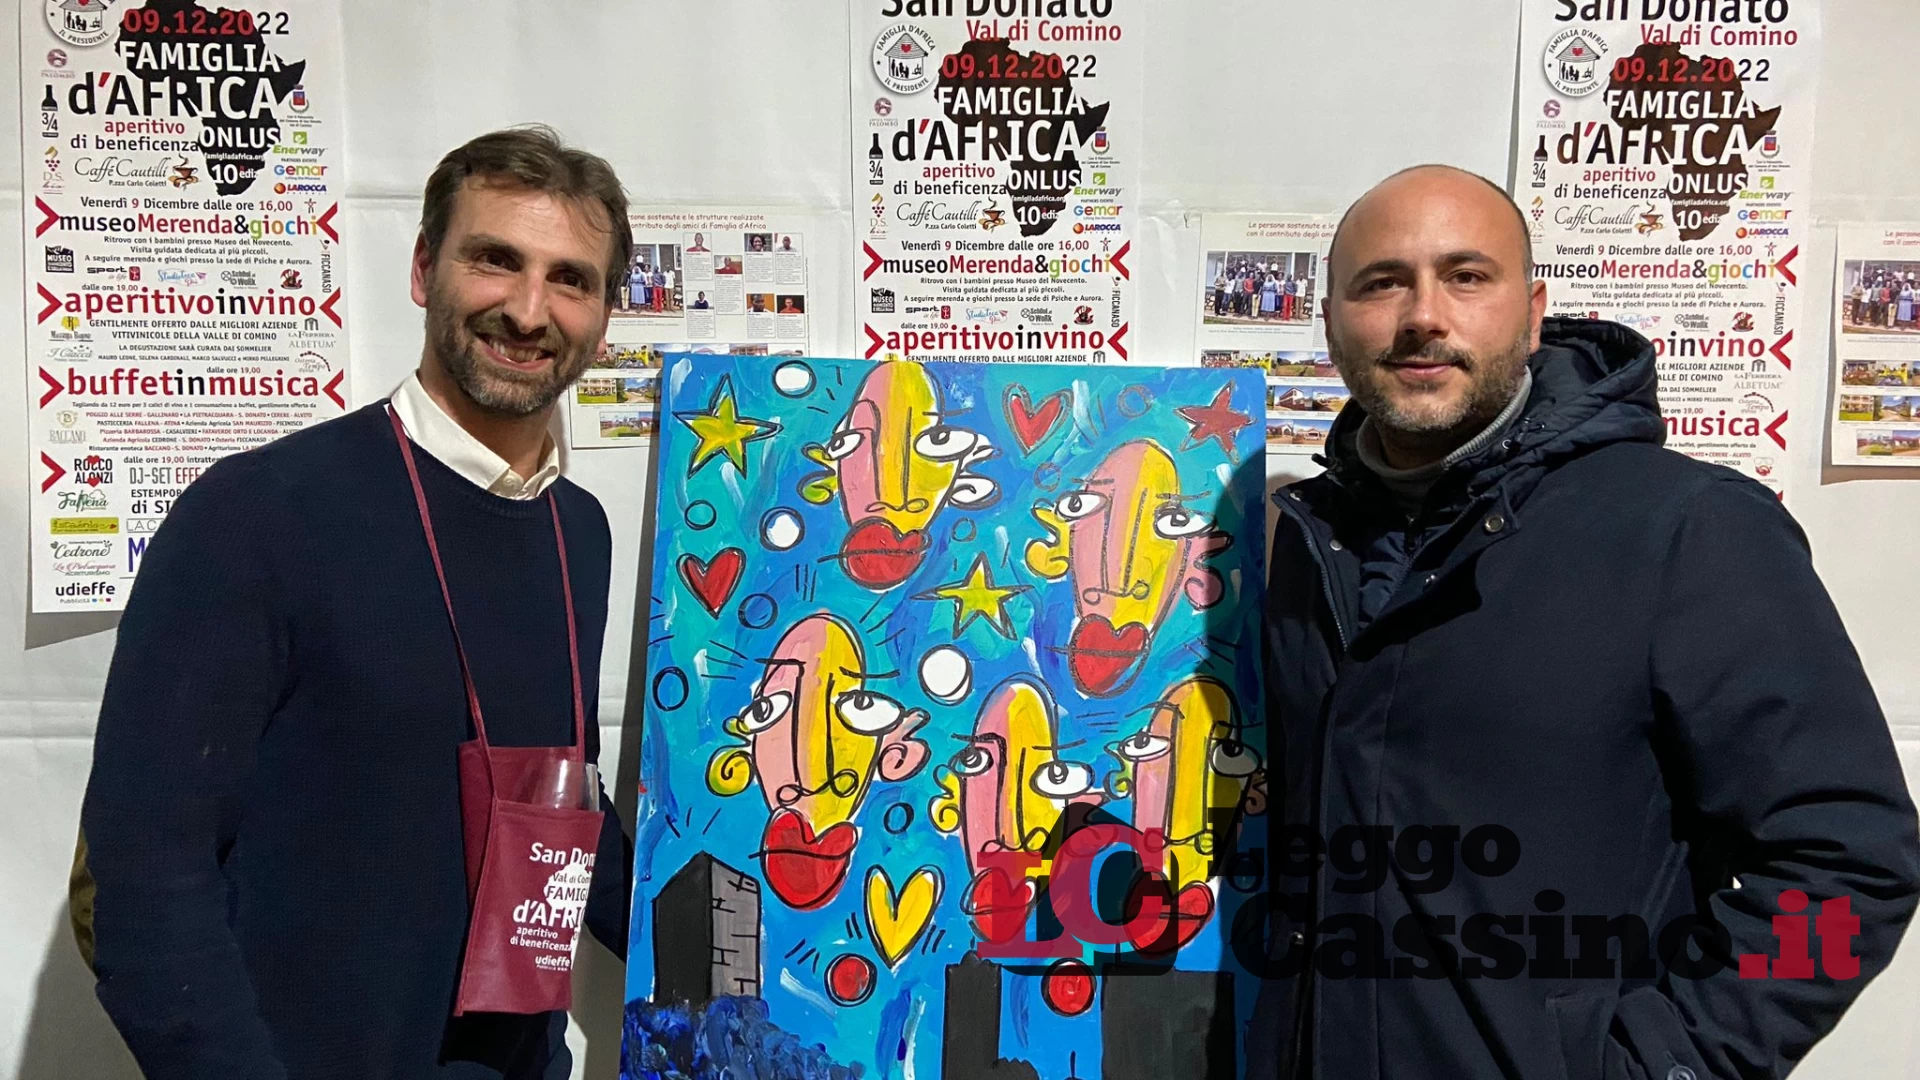 San Donato Valcomino: Torna l'evento di beneficenza dedicato a famiglia D'Africa